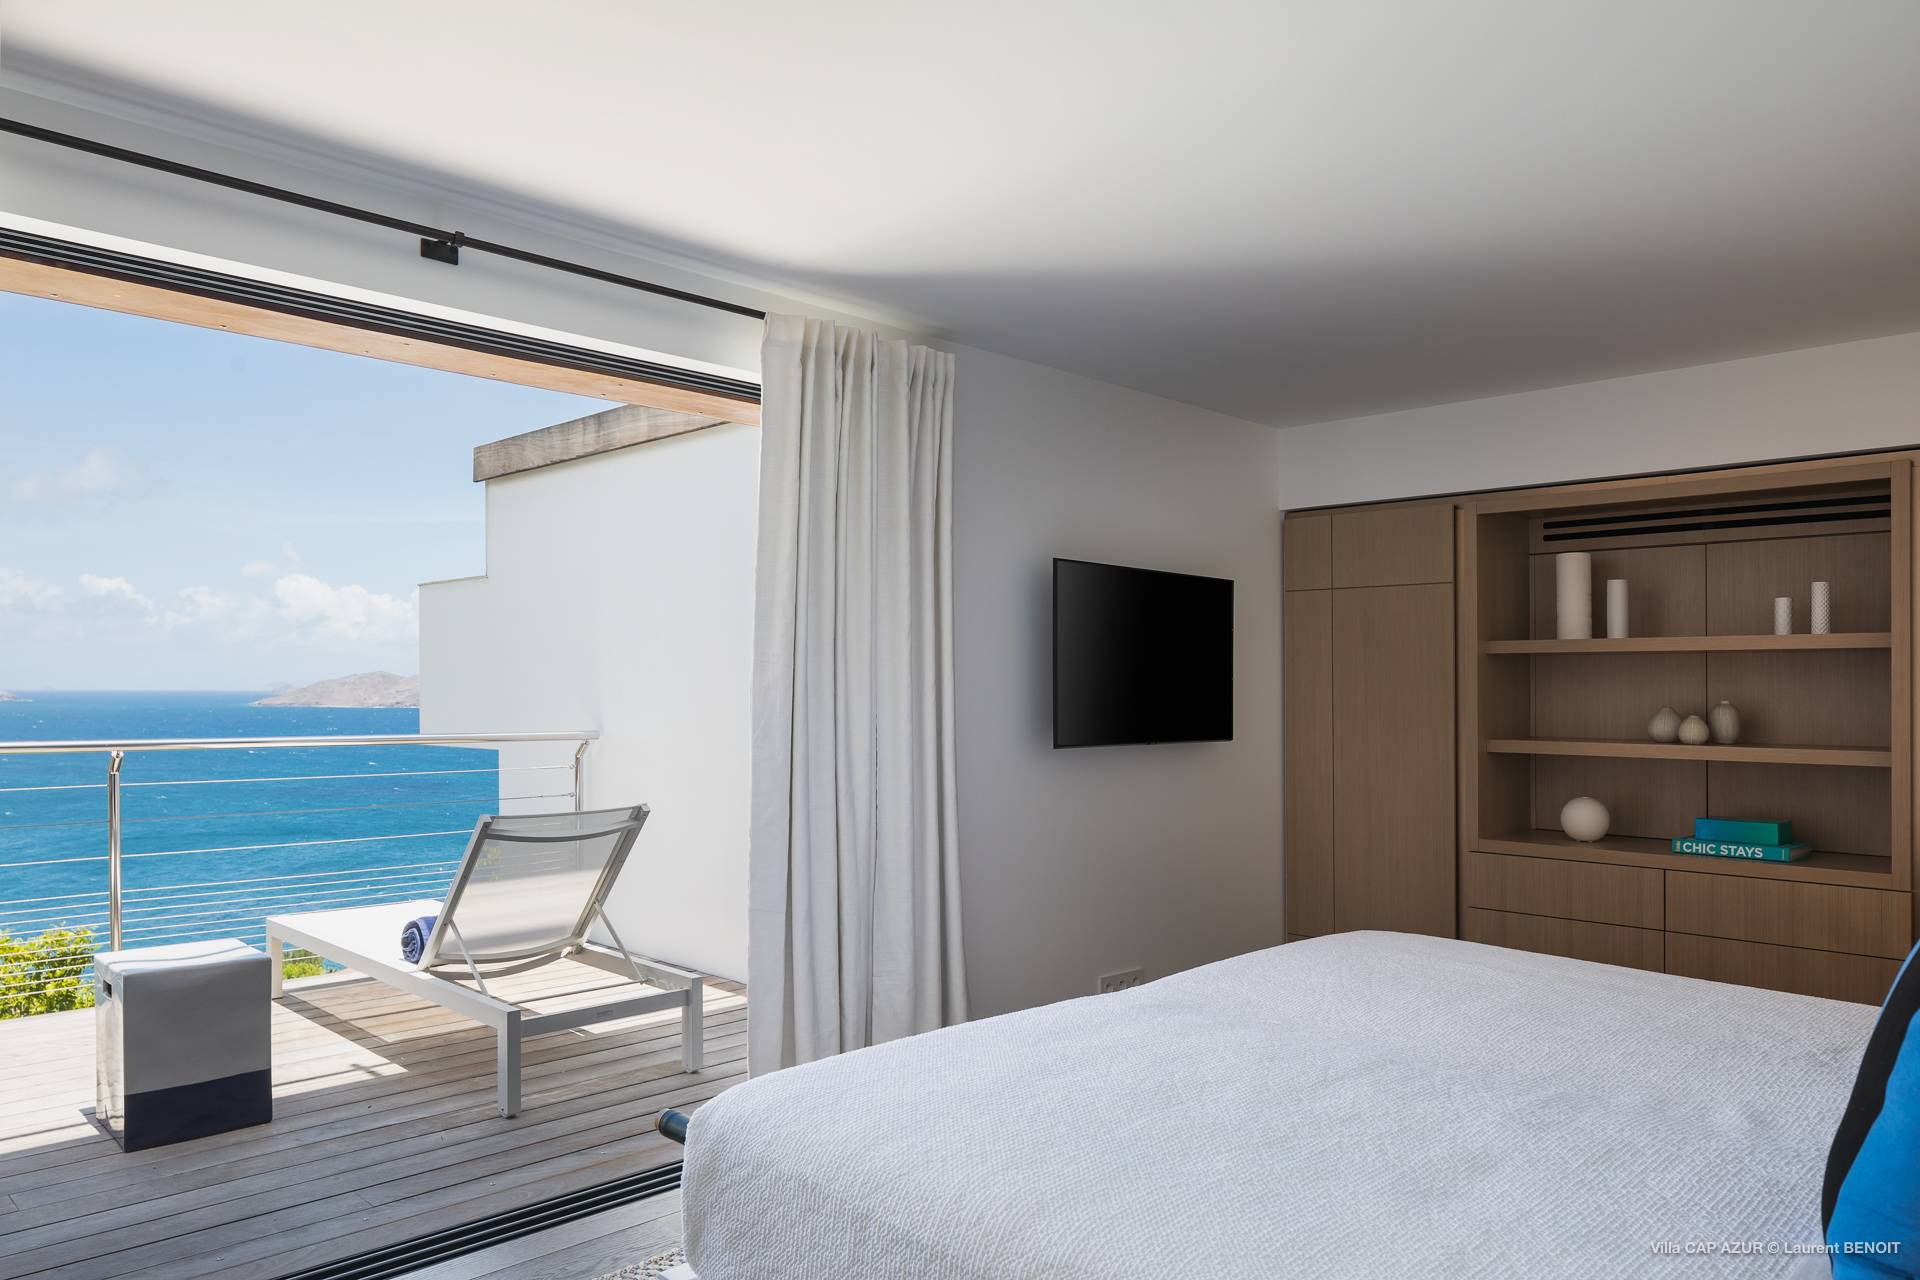 Villa Cap Azur Bedroom 4